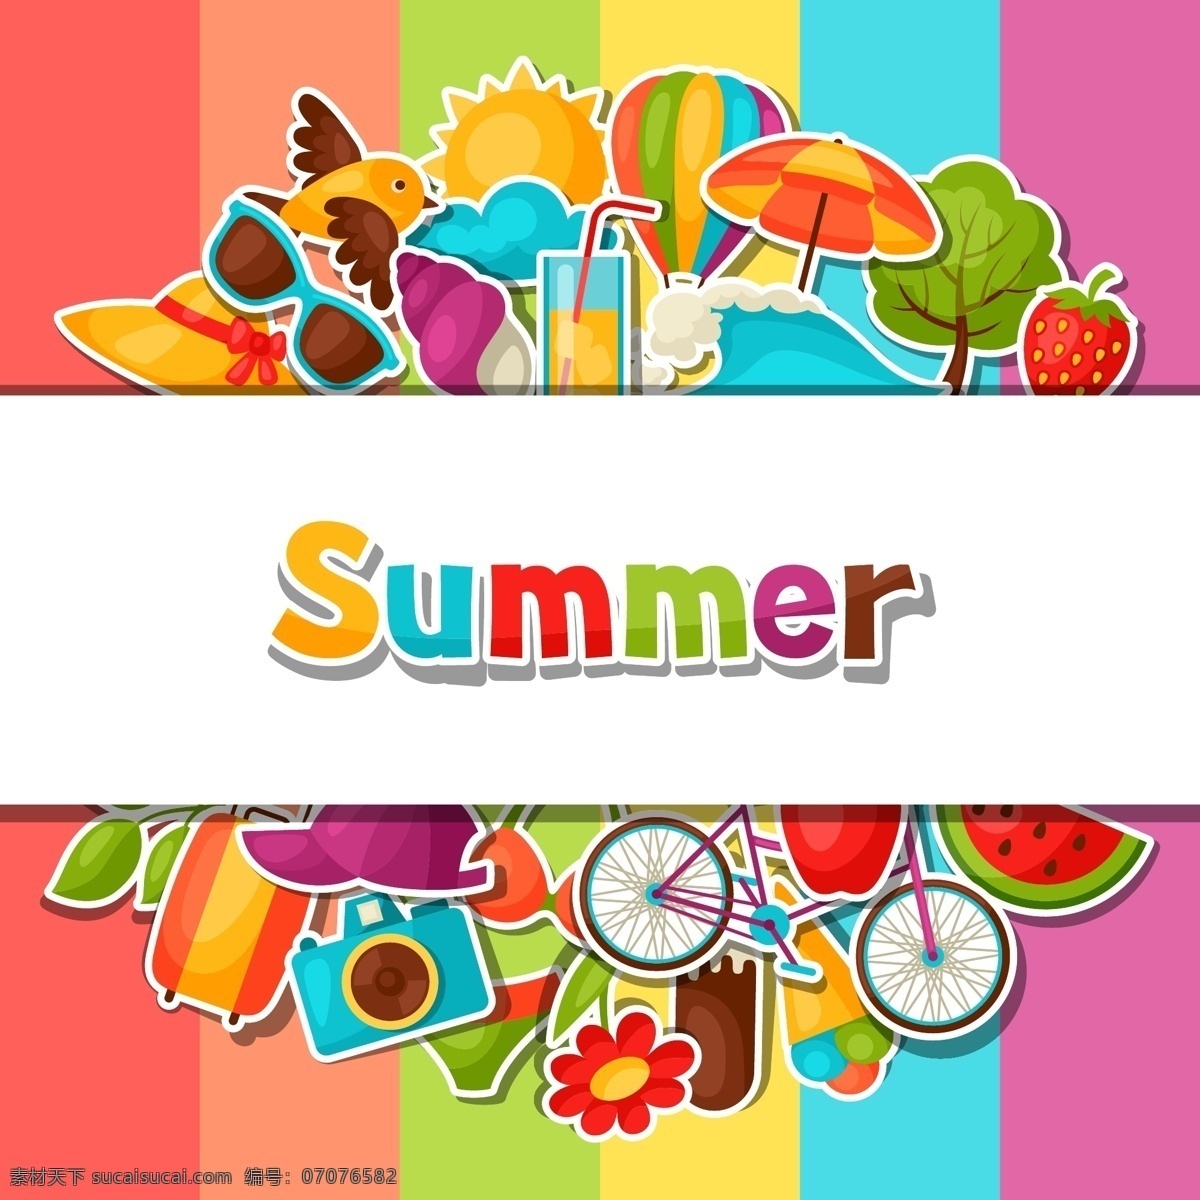 多彩 线条 夏日 矢量 背景 伞 水果 复古 创意 涂鸦 英文 小清新 卡通 填充 插画 海报 广告 包装 印刷